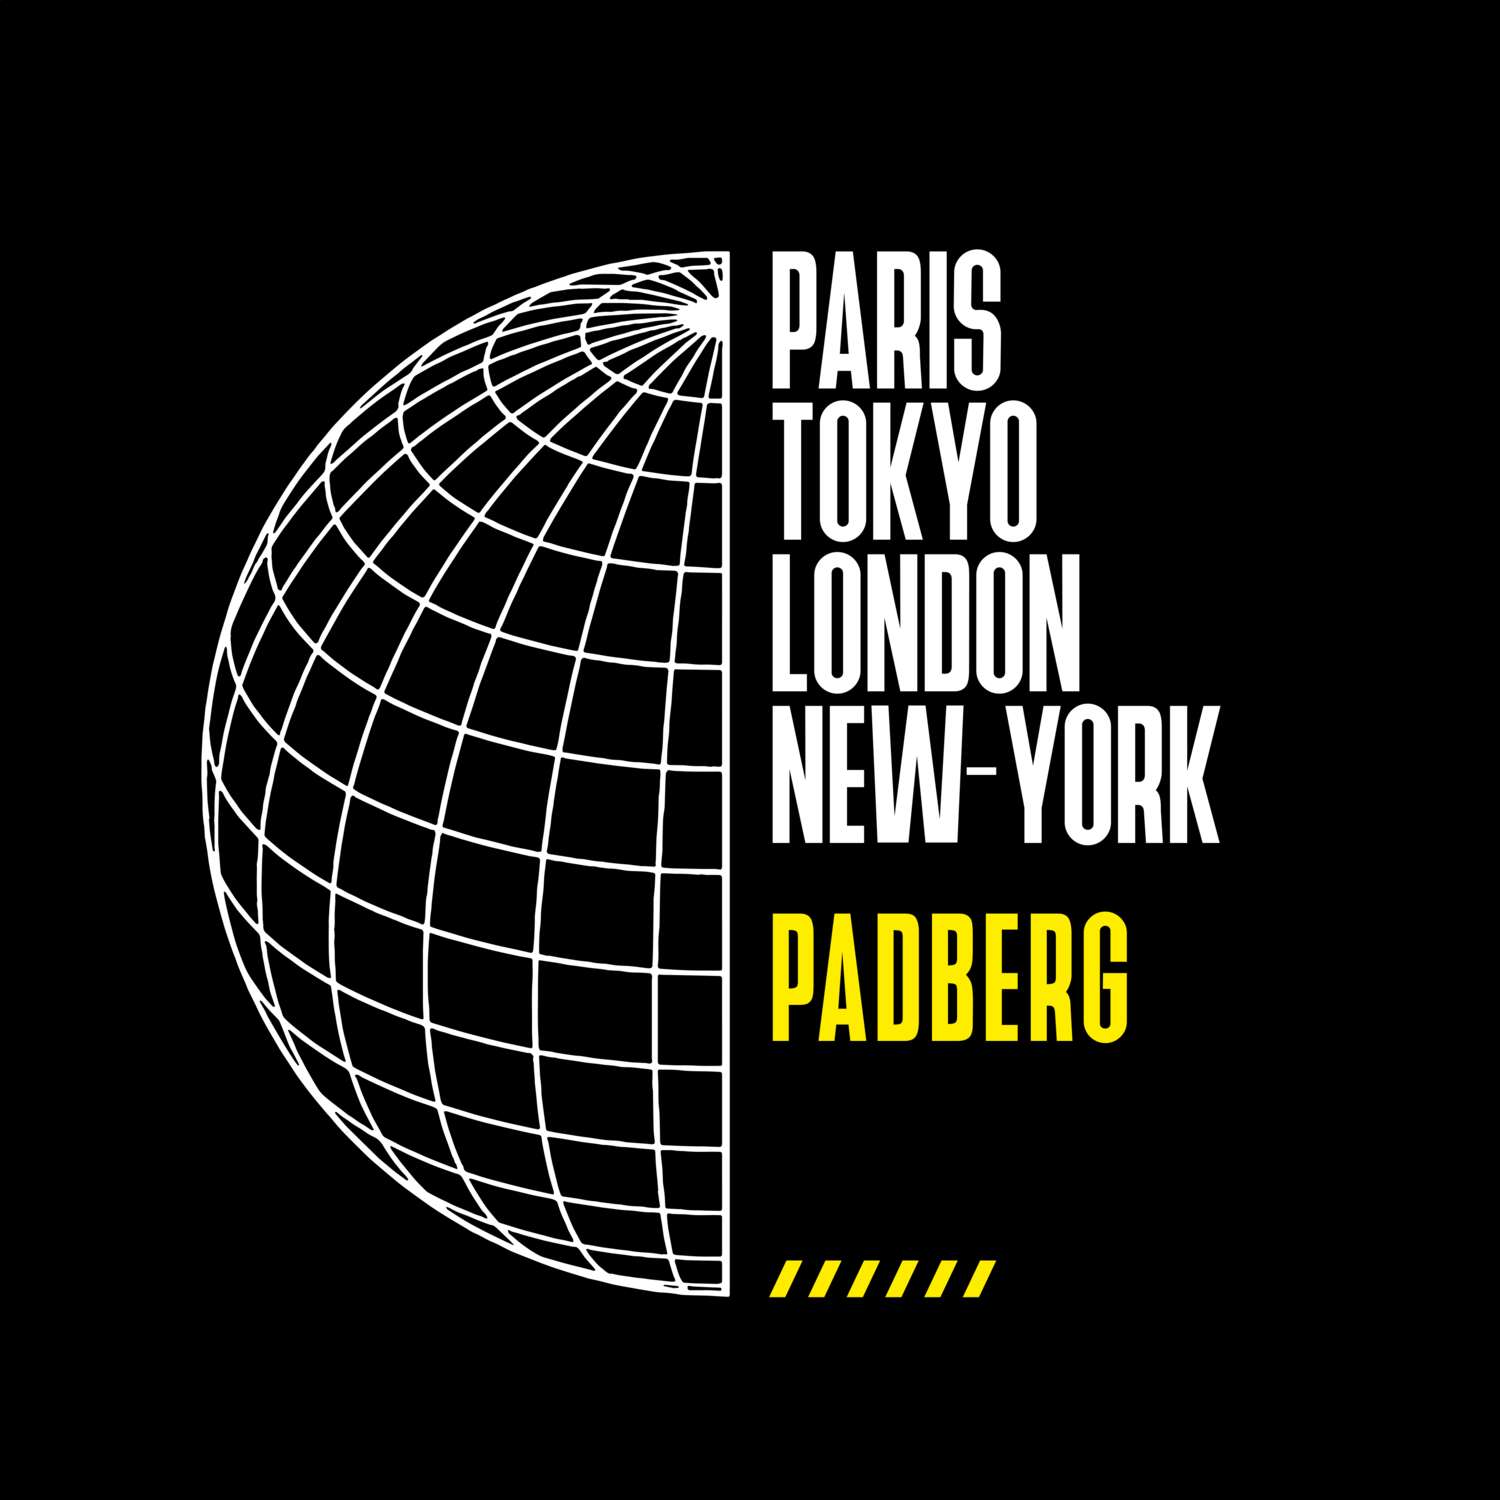 Padberg T-Shirt »Paris Tokyo London«